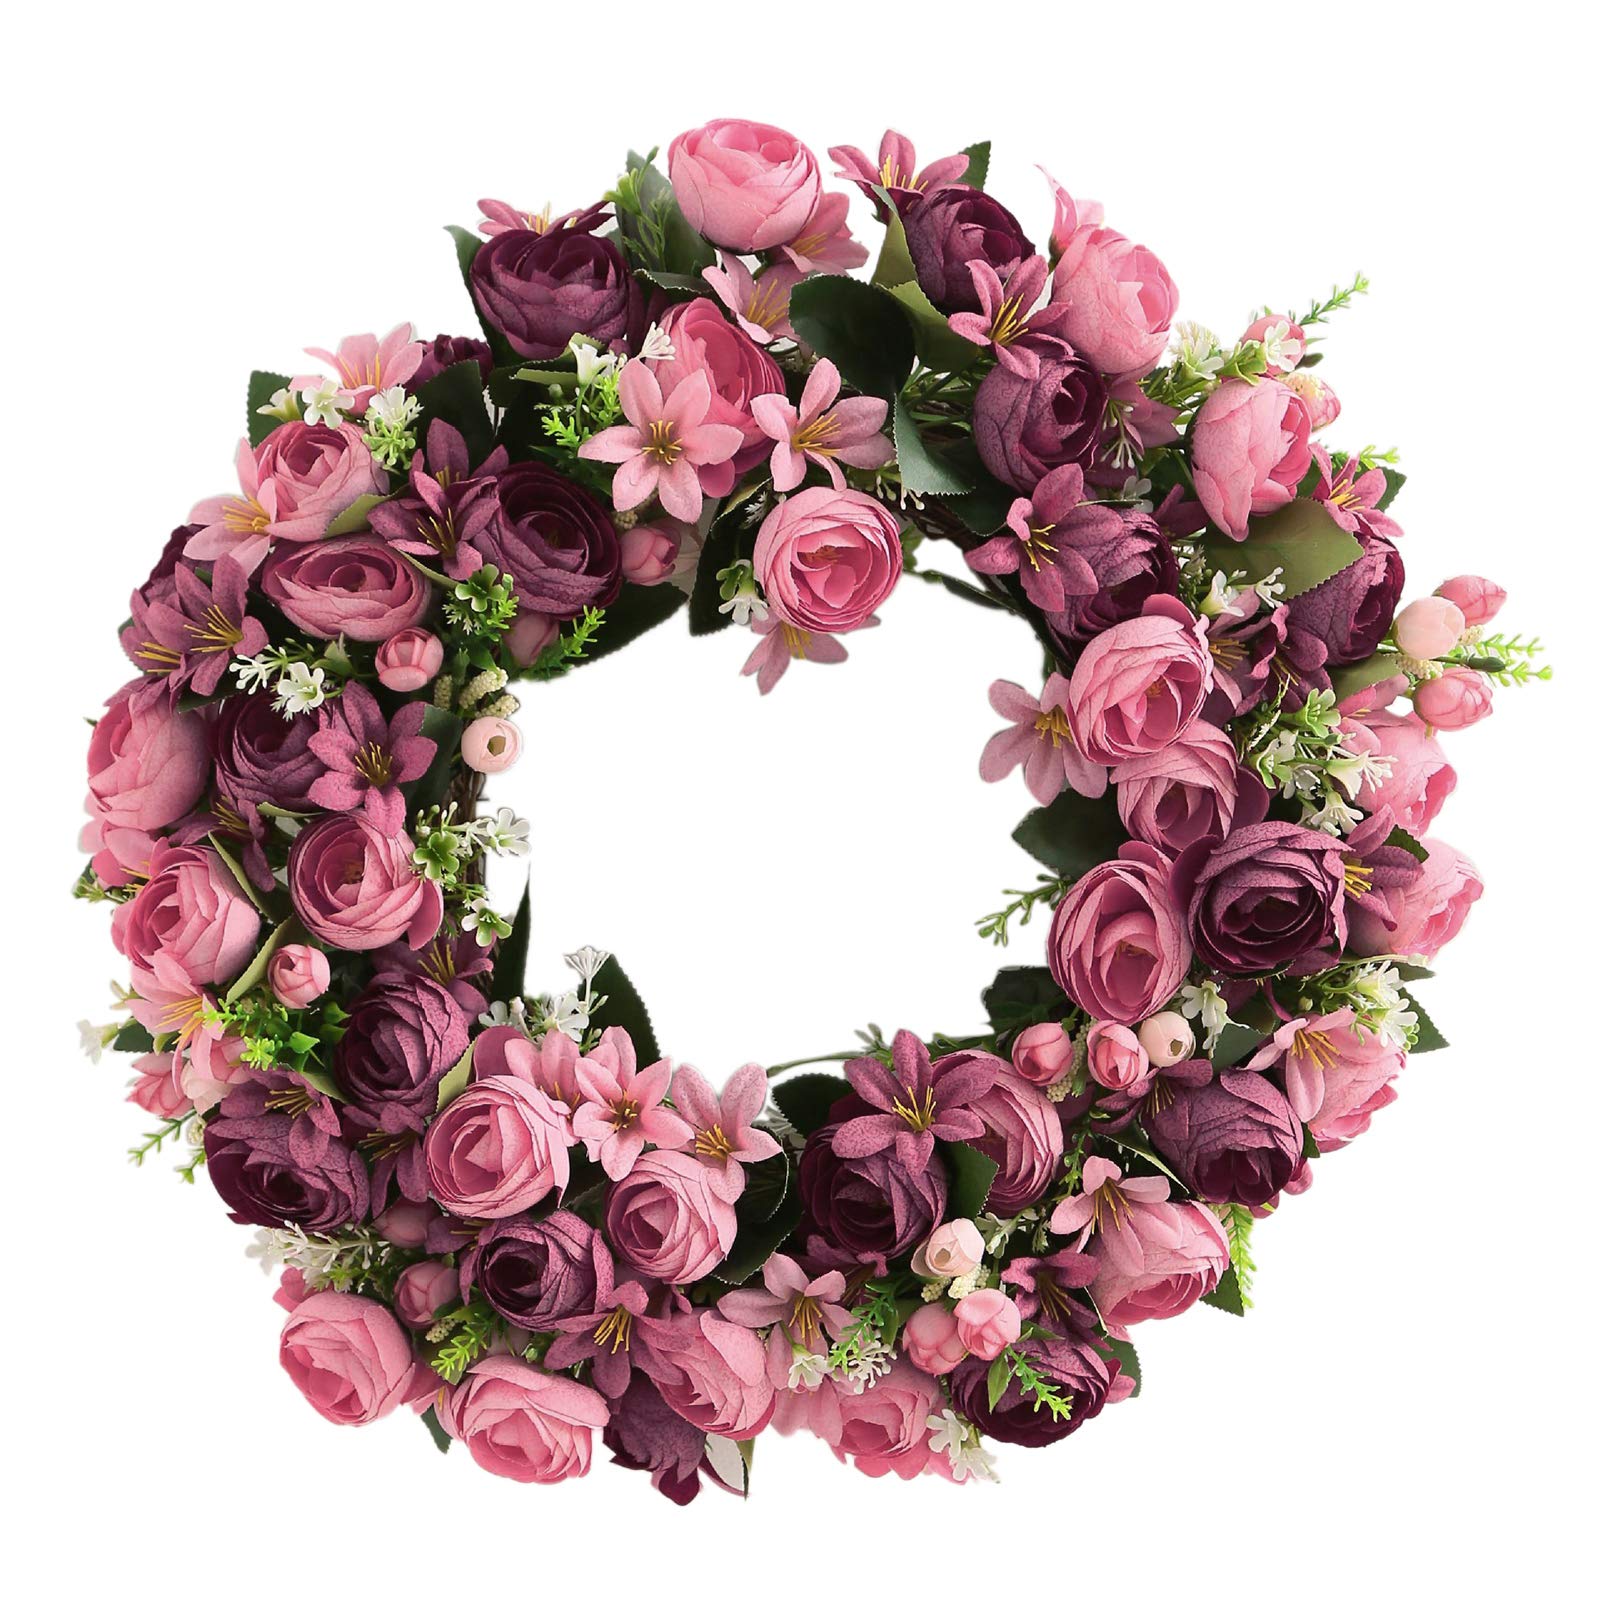 Yeenee Türkranz, künstliche Blumenkranz, für alle Jahreszeiten, für Haustür, Wohnzimmer, Wand, Garten, Hochzeit, Festival, Dekoration (Rose)